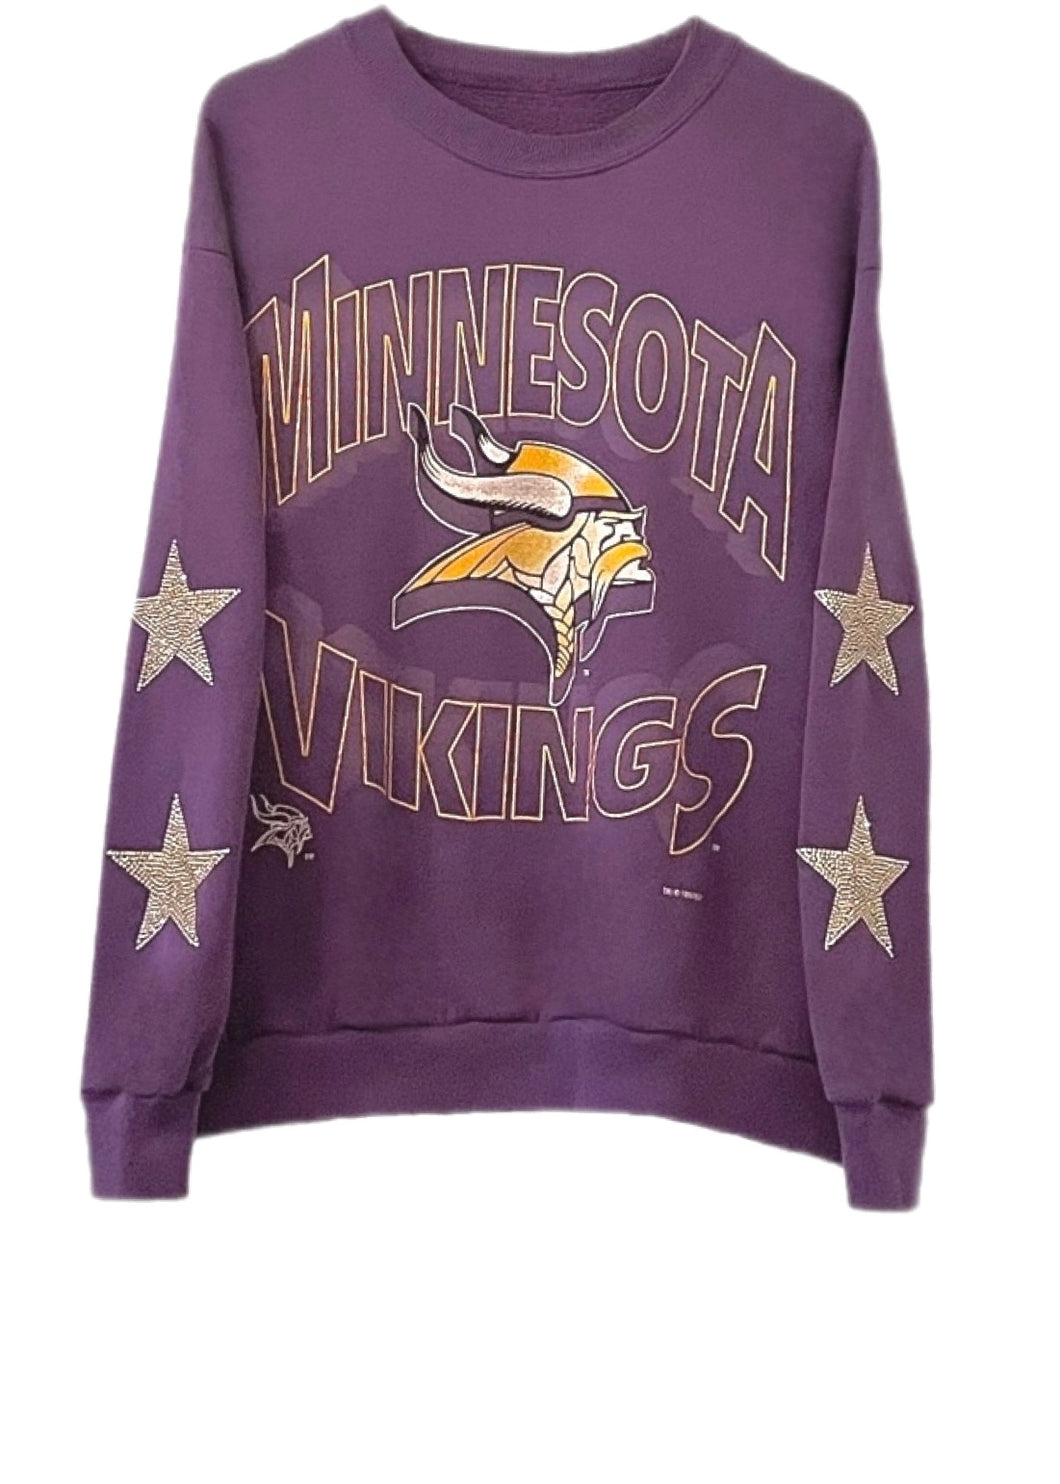 Minnesota Vikings, NFL One of a KIND Vintage Sweatshirt with Crystal Star Design